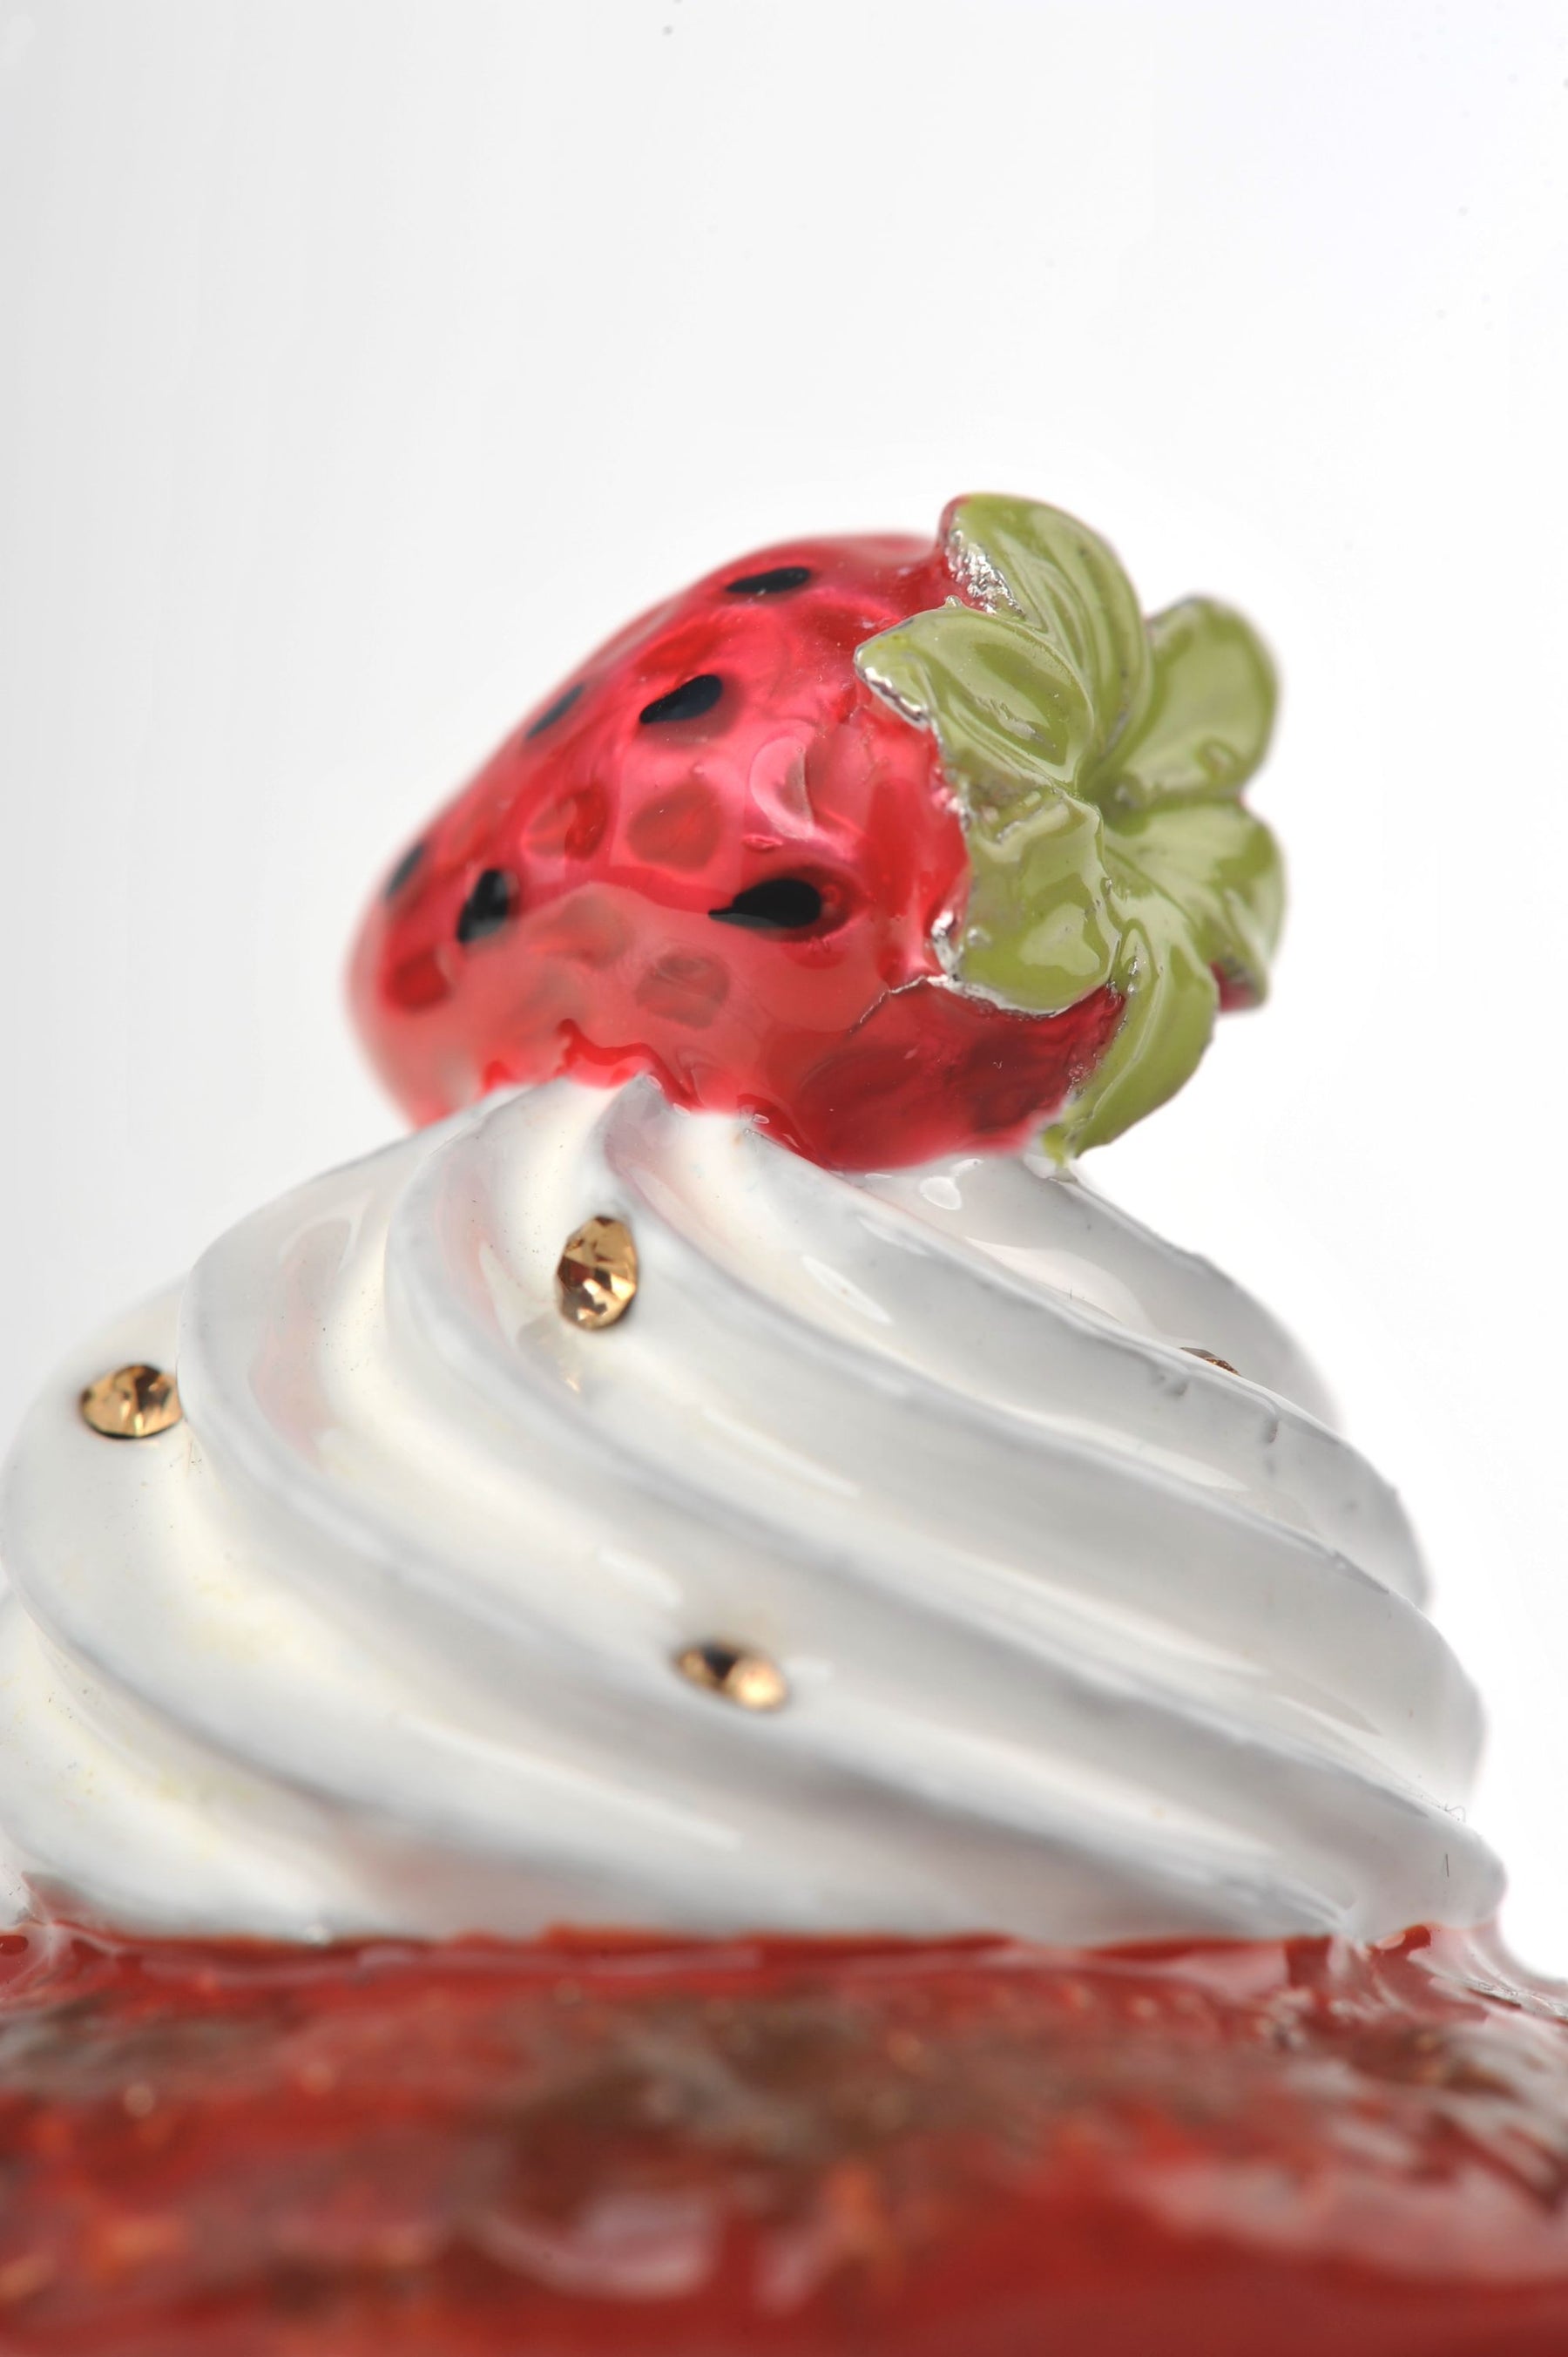 Keren Kopal Red Velvet Cupcake with Strawberry  41.25